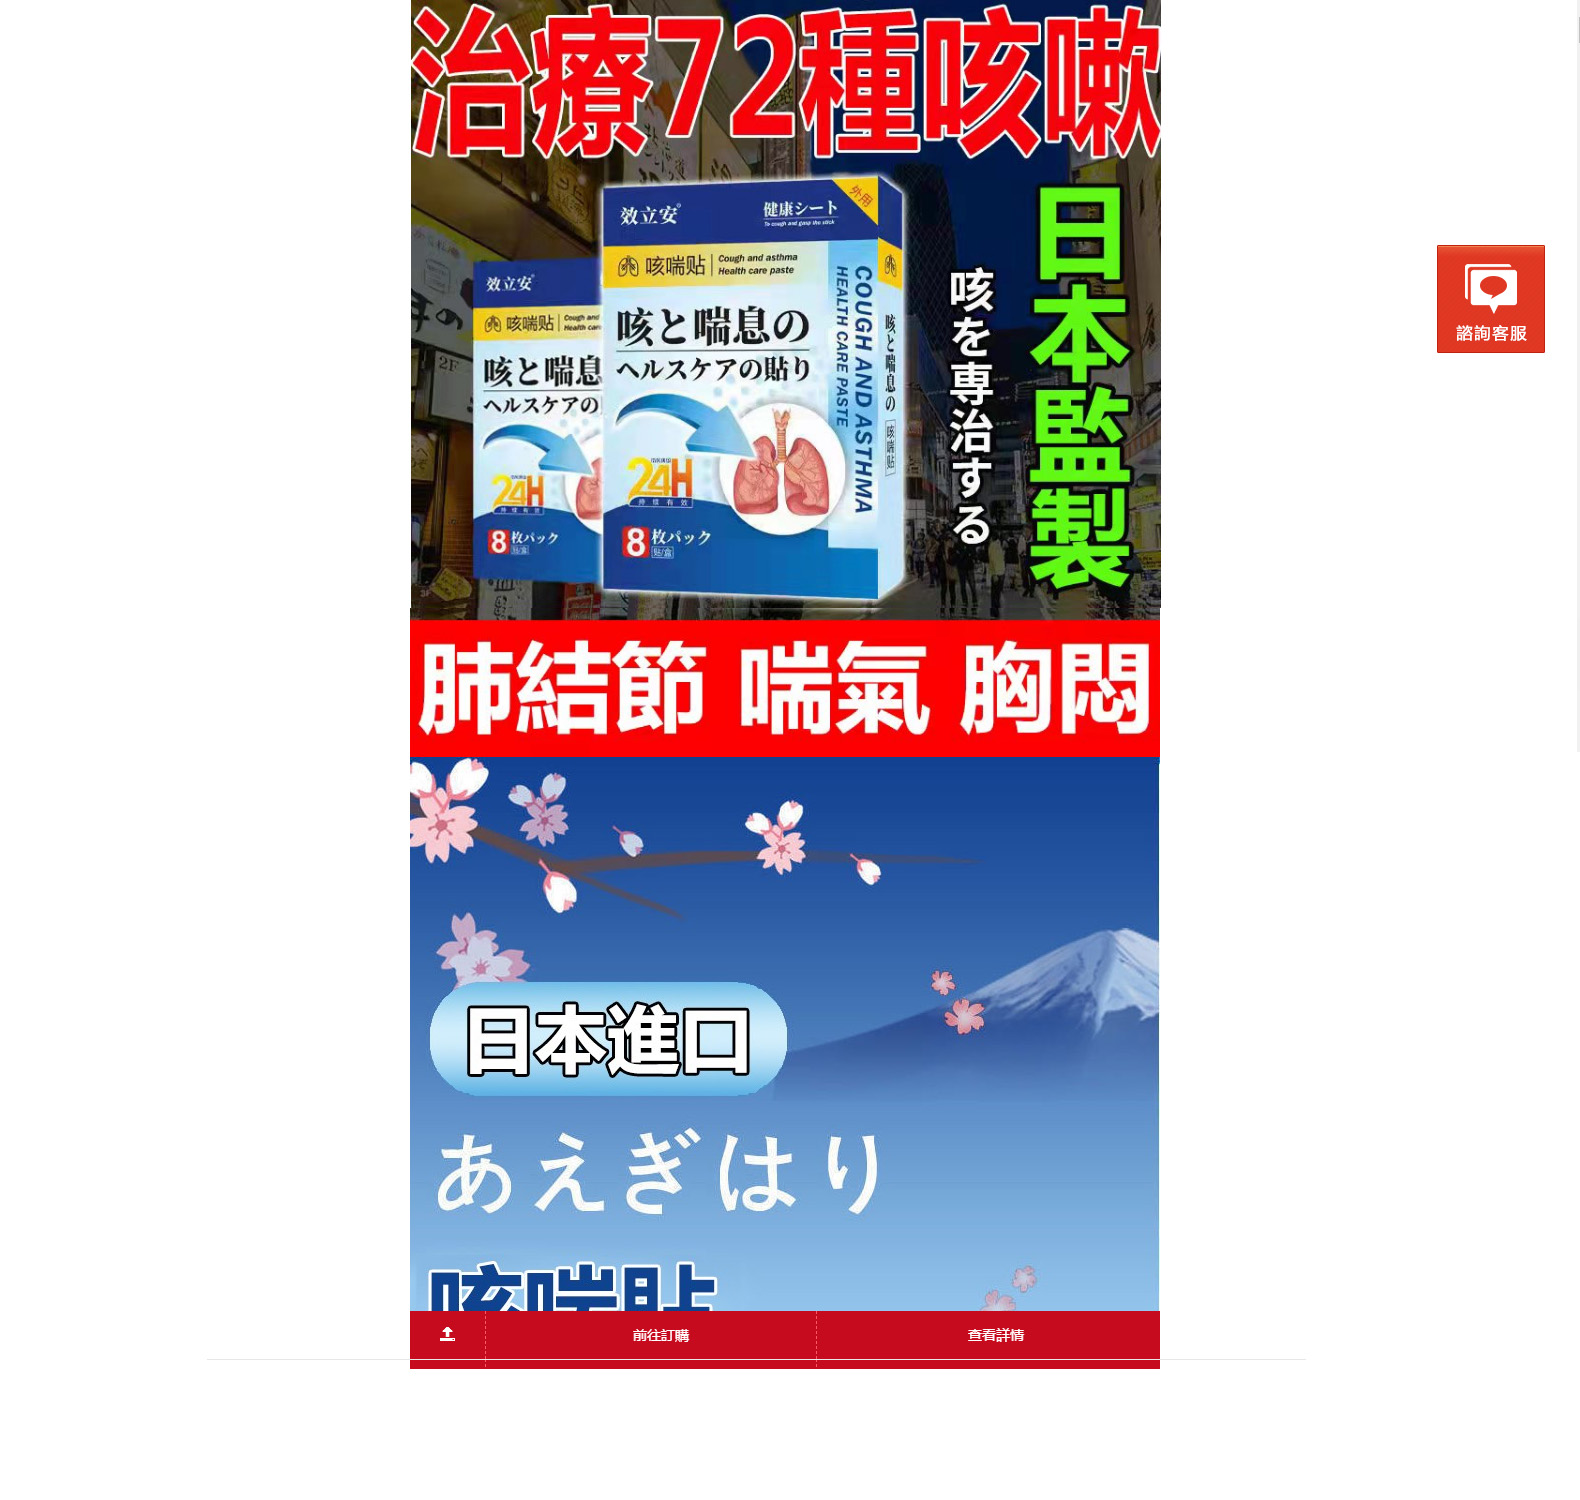 日本咳喘貼專賣店-咳嗽平喘貼,化痰止咳貼,治療哮喘藥物推薦